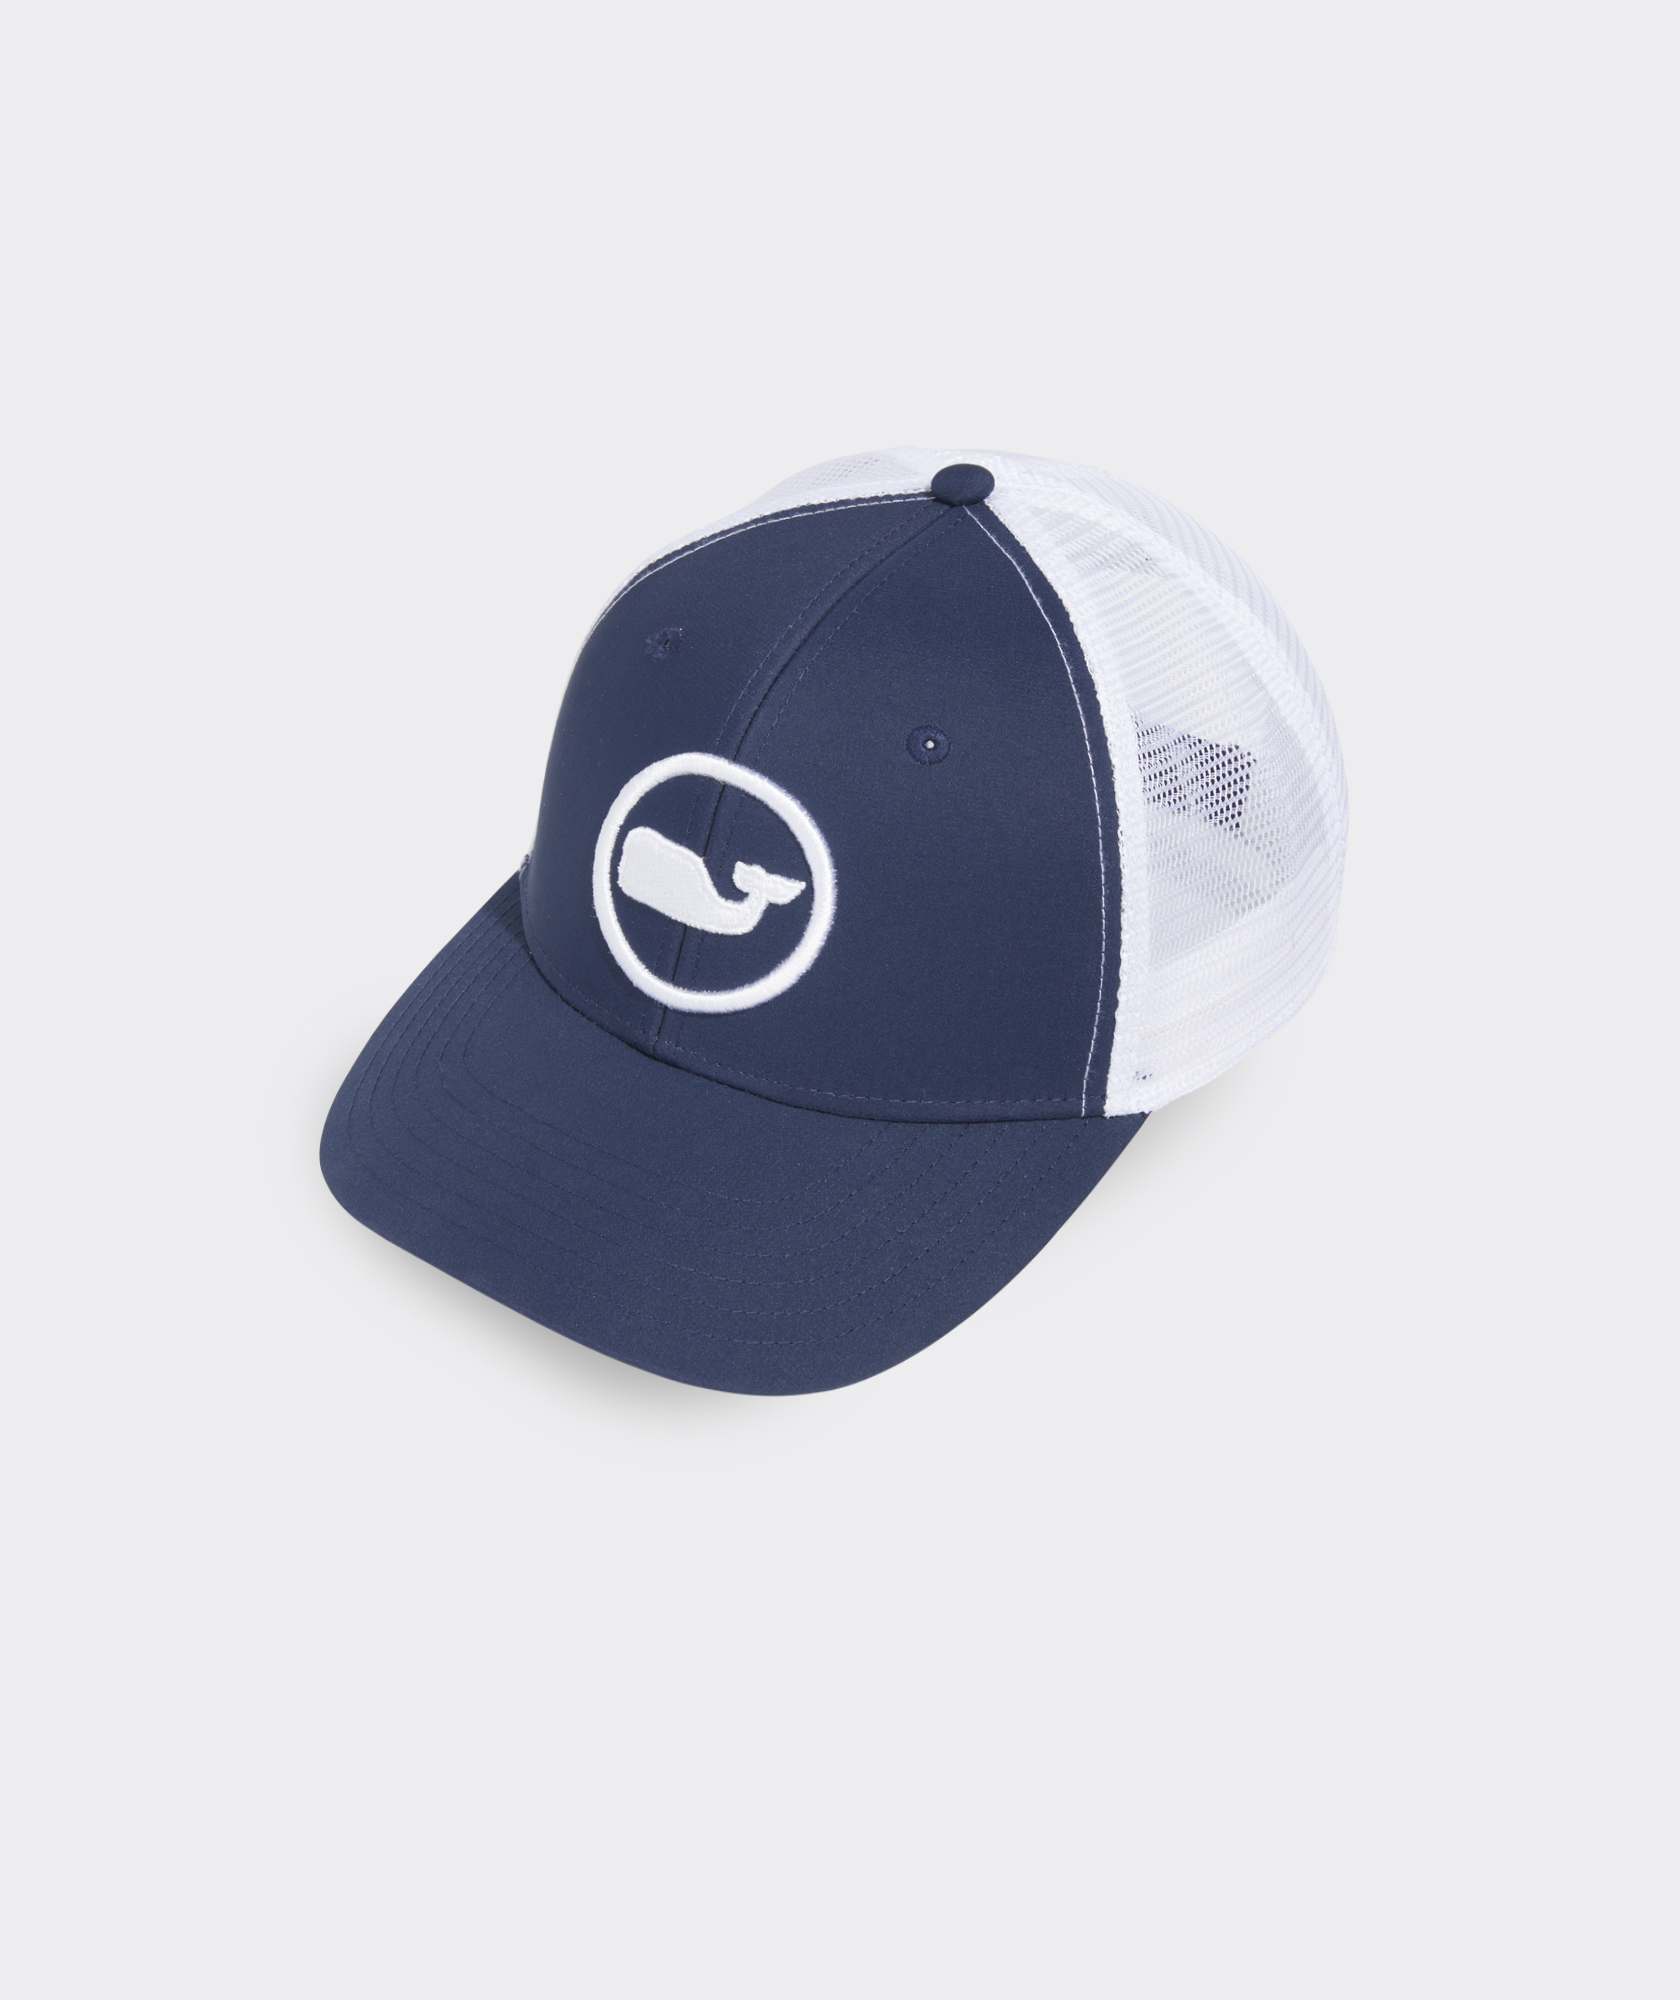 Vineyard Vines Men's Harbour Fish Trucker Hat